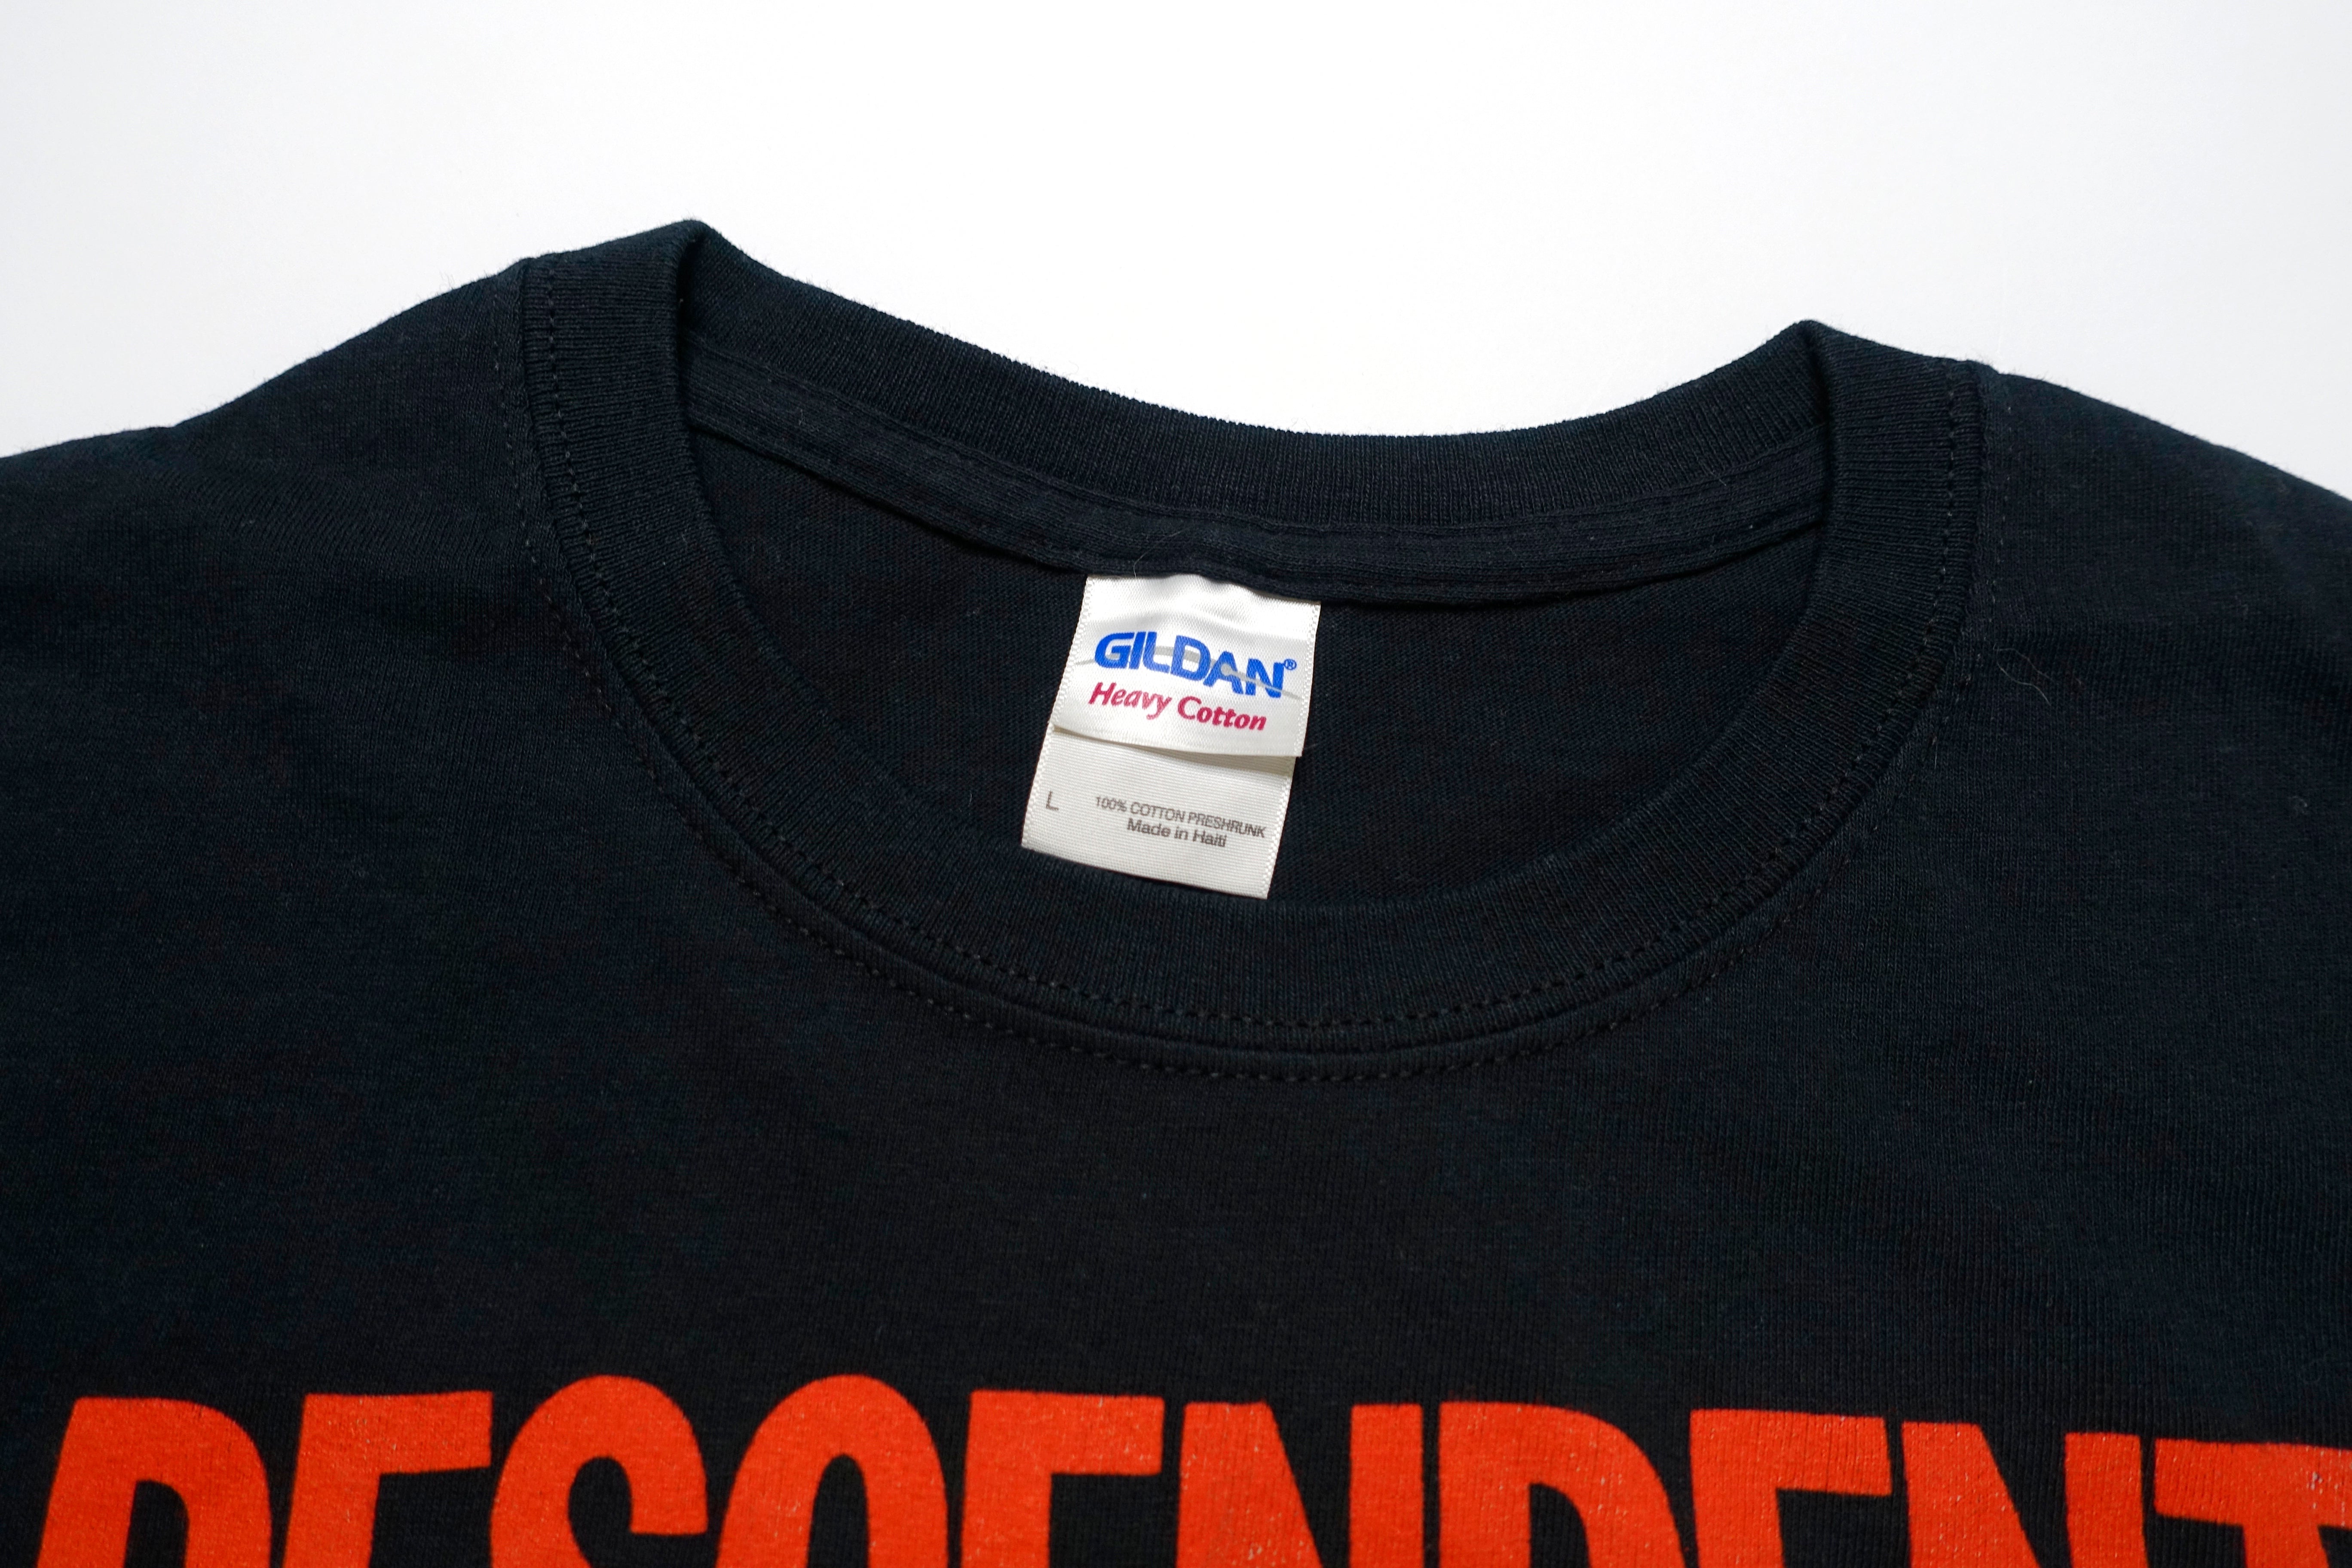 Descendents - Musink Fest 2014 Tour Shirt Size Large